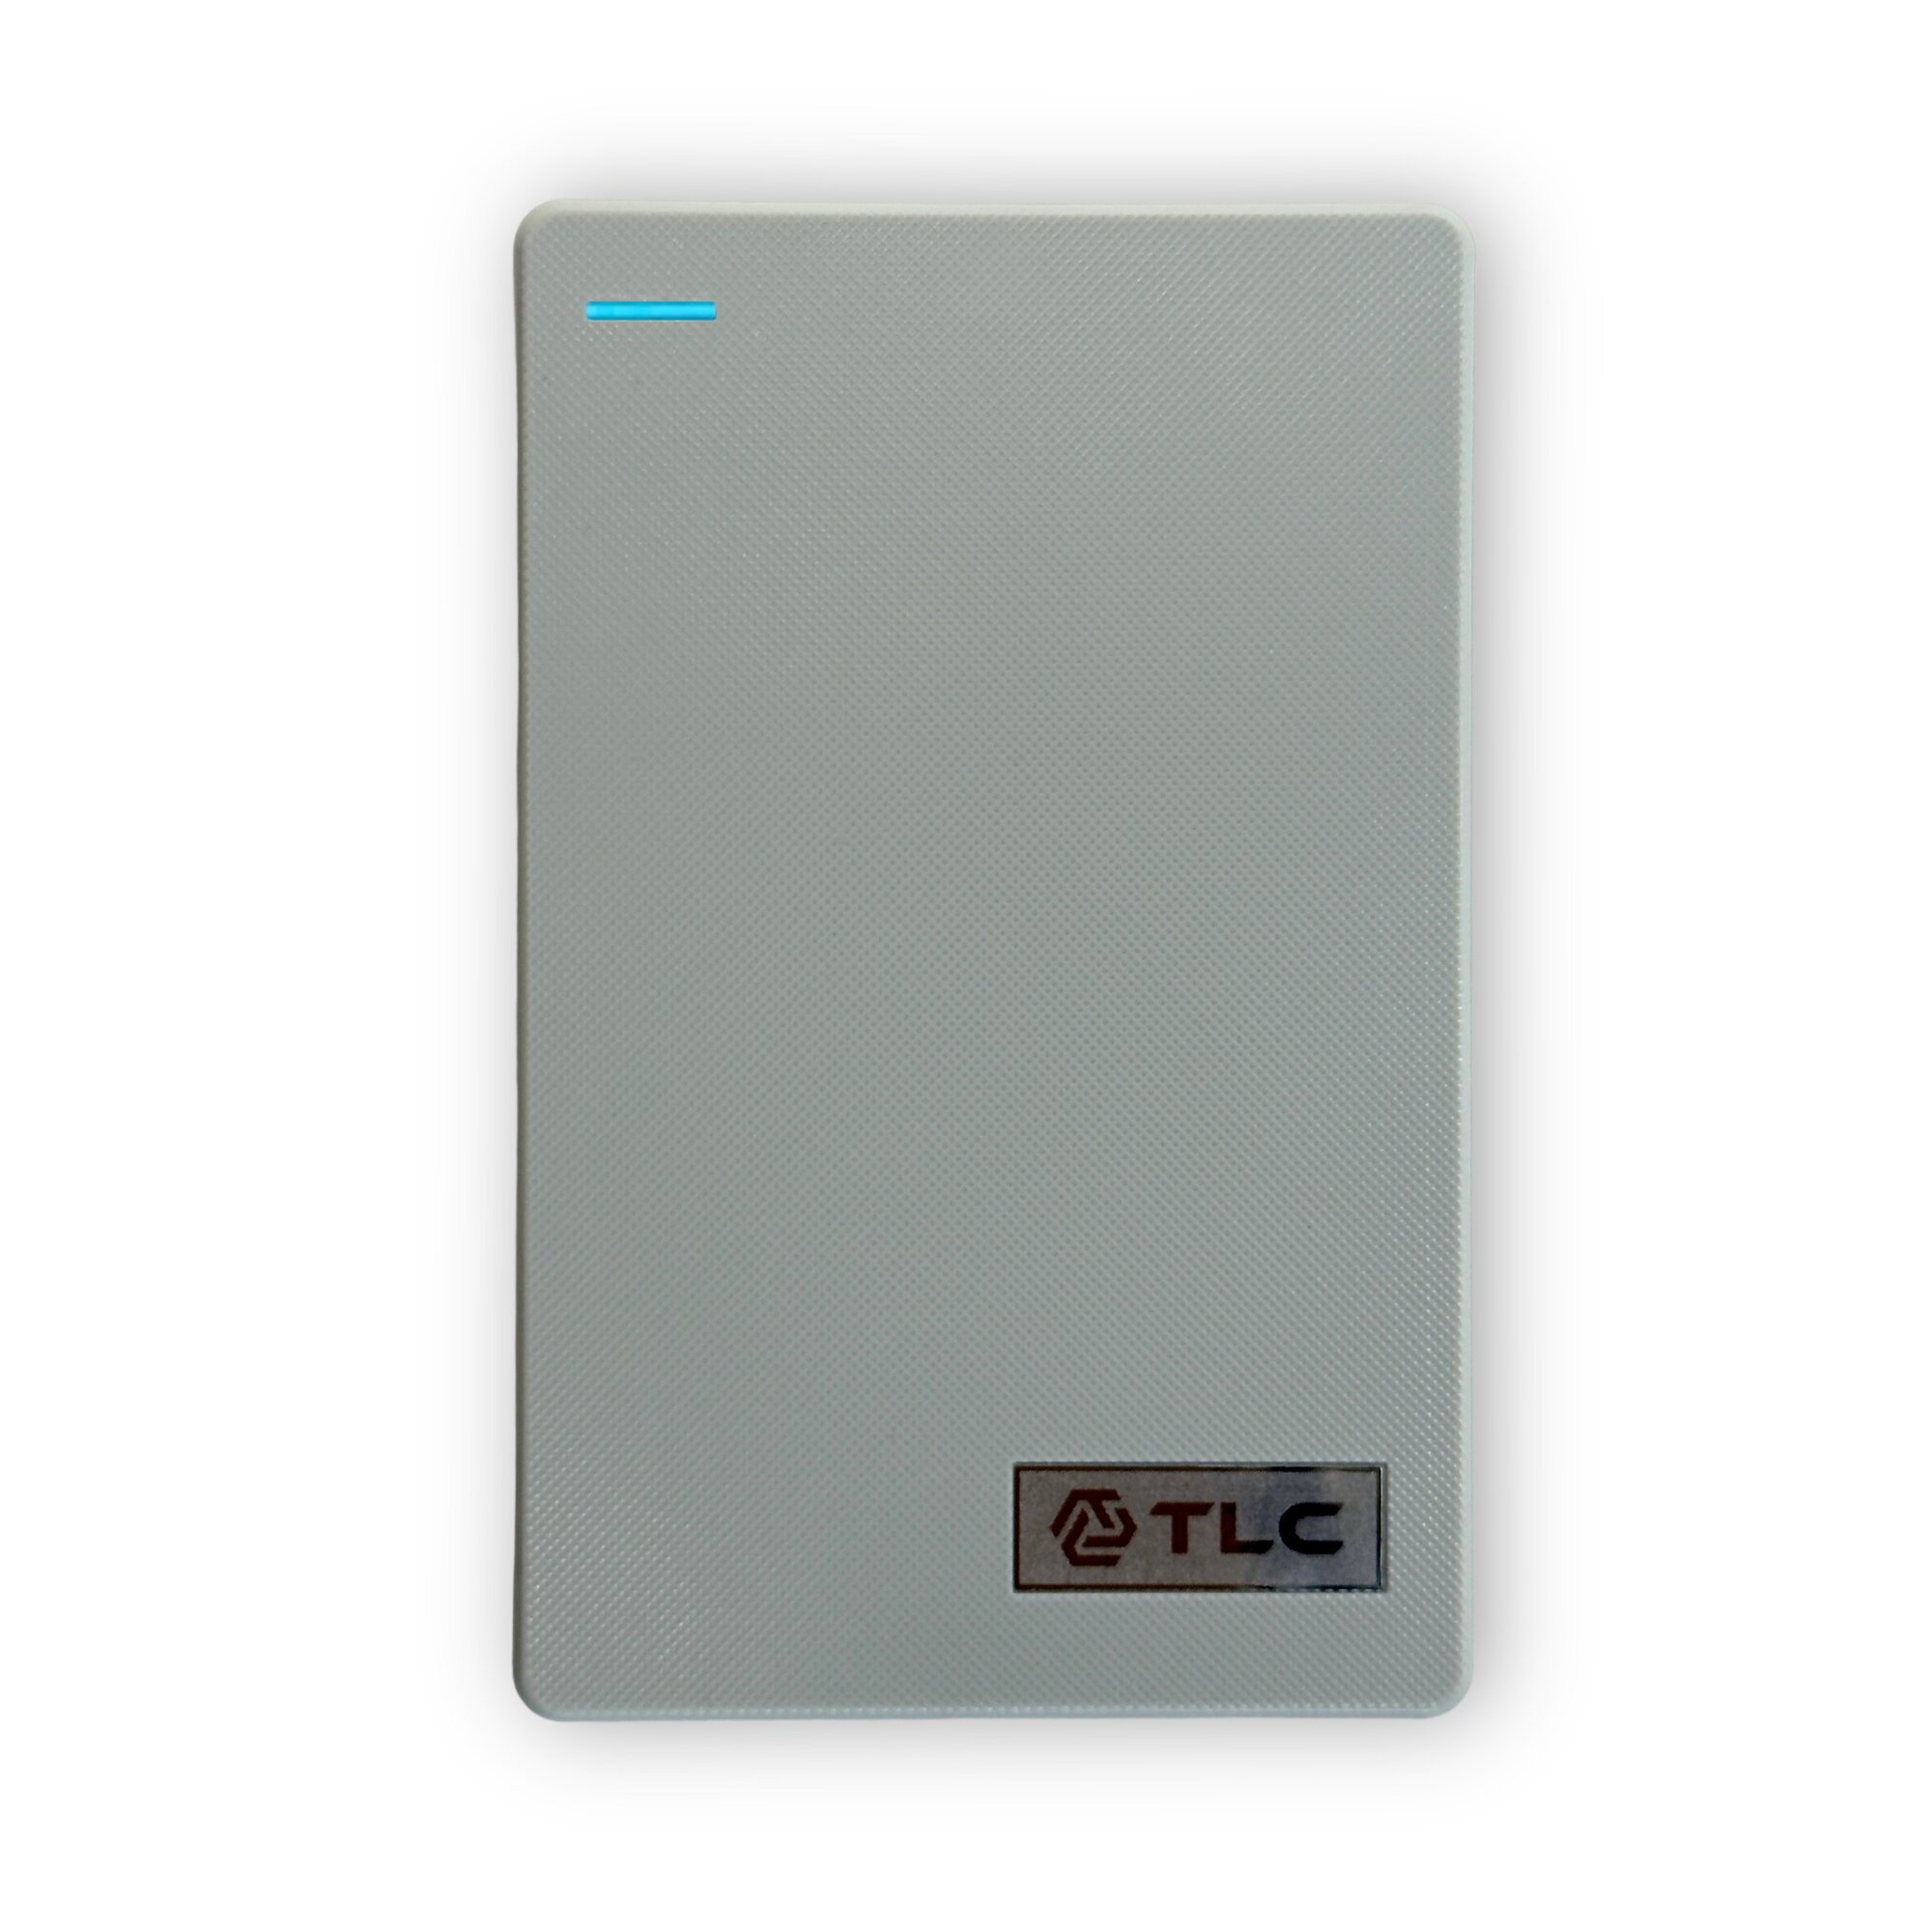 Внешний жесткий диск TLC Slim Portable, Портативный HDD 2,5" 320 Gb USB 3.0, Серый